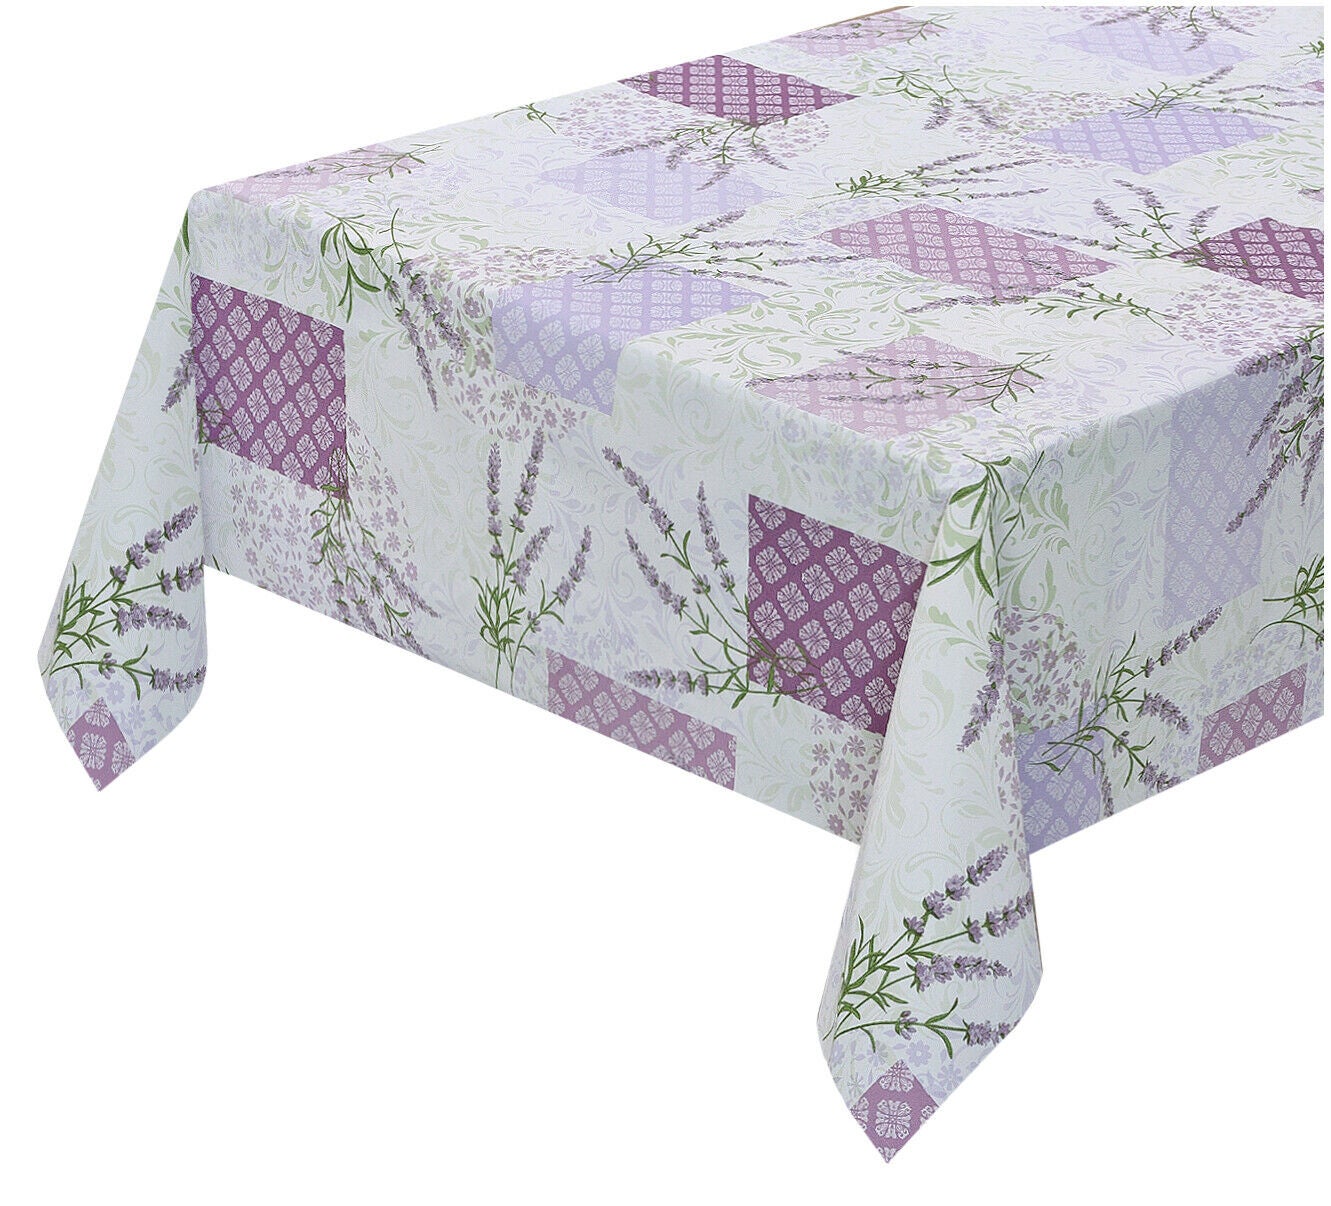 Provence; di colore grigio e violetto; dimensioni selezionabili Rund 100cm Lavendel Herzen Provance Violett Grau Tovaglia plastificata lavabile; motivo con lavanda asciugamani cuori 